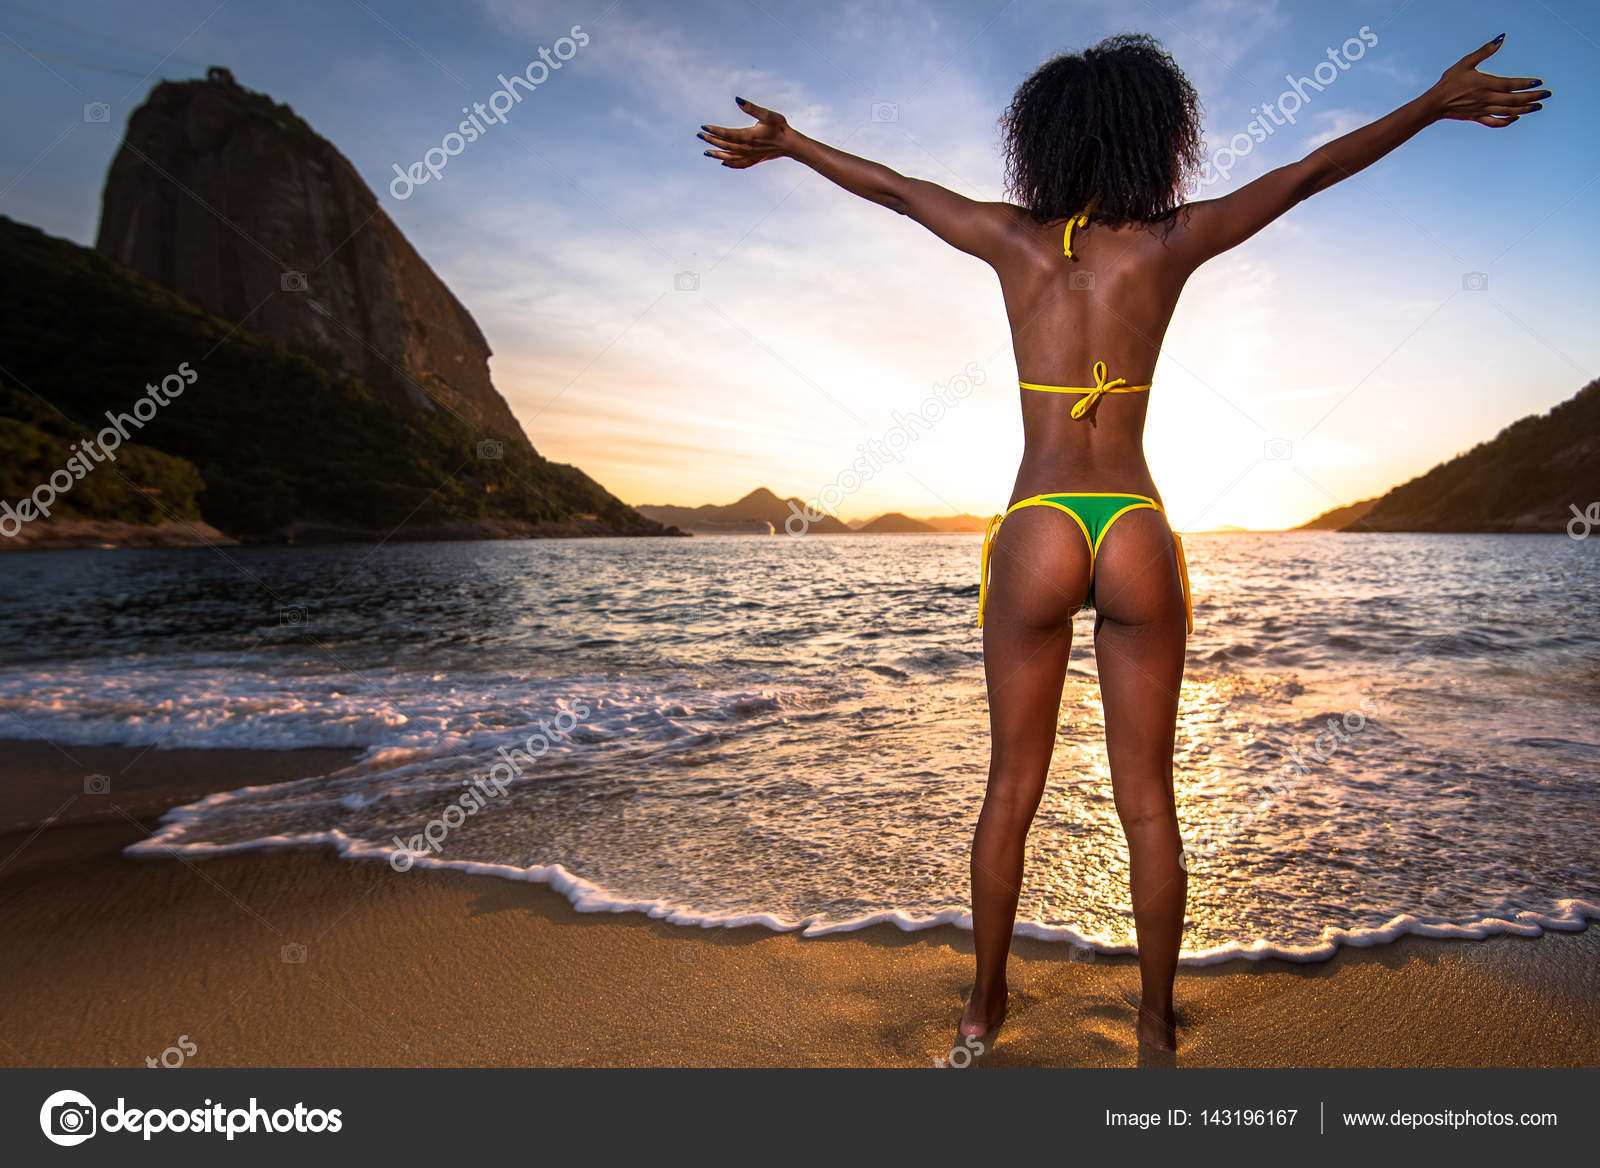 Brazilian brazil beach girl